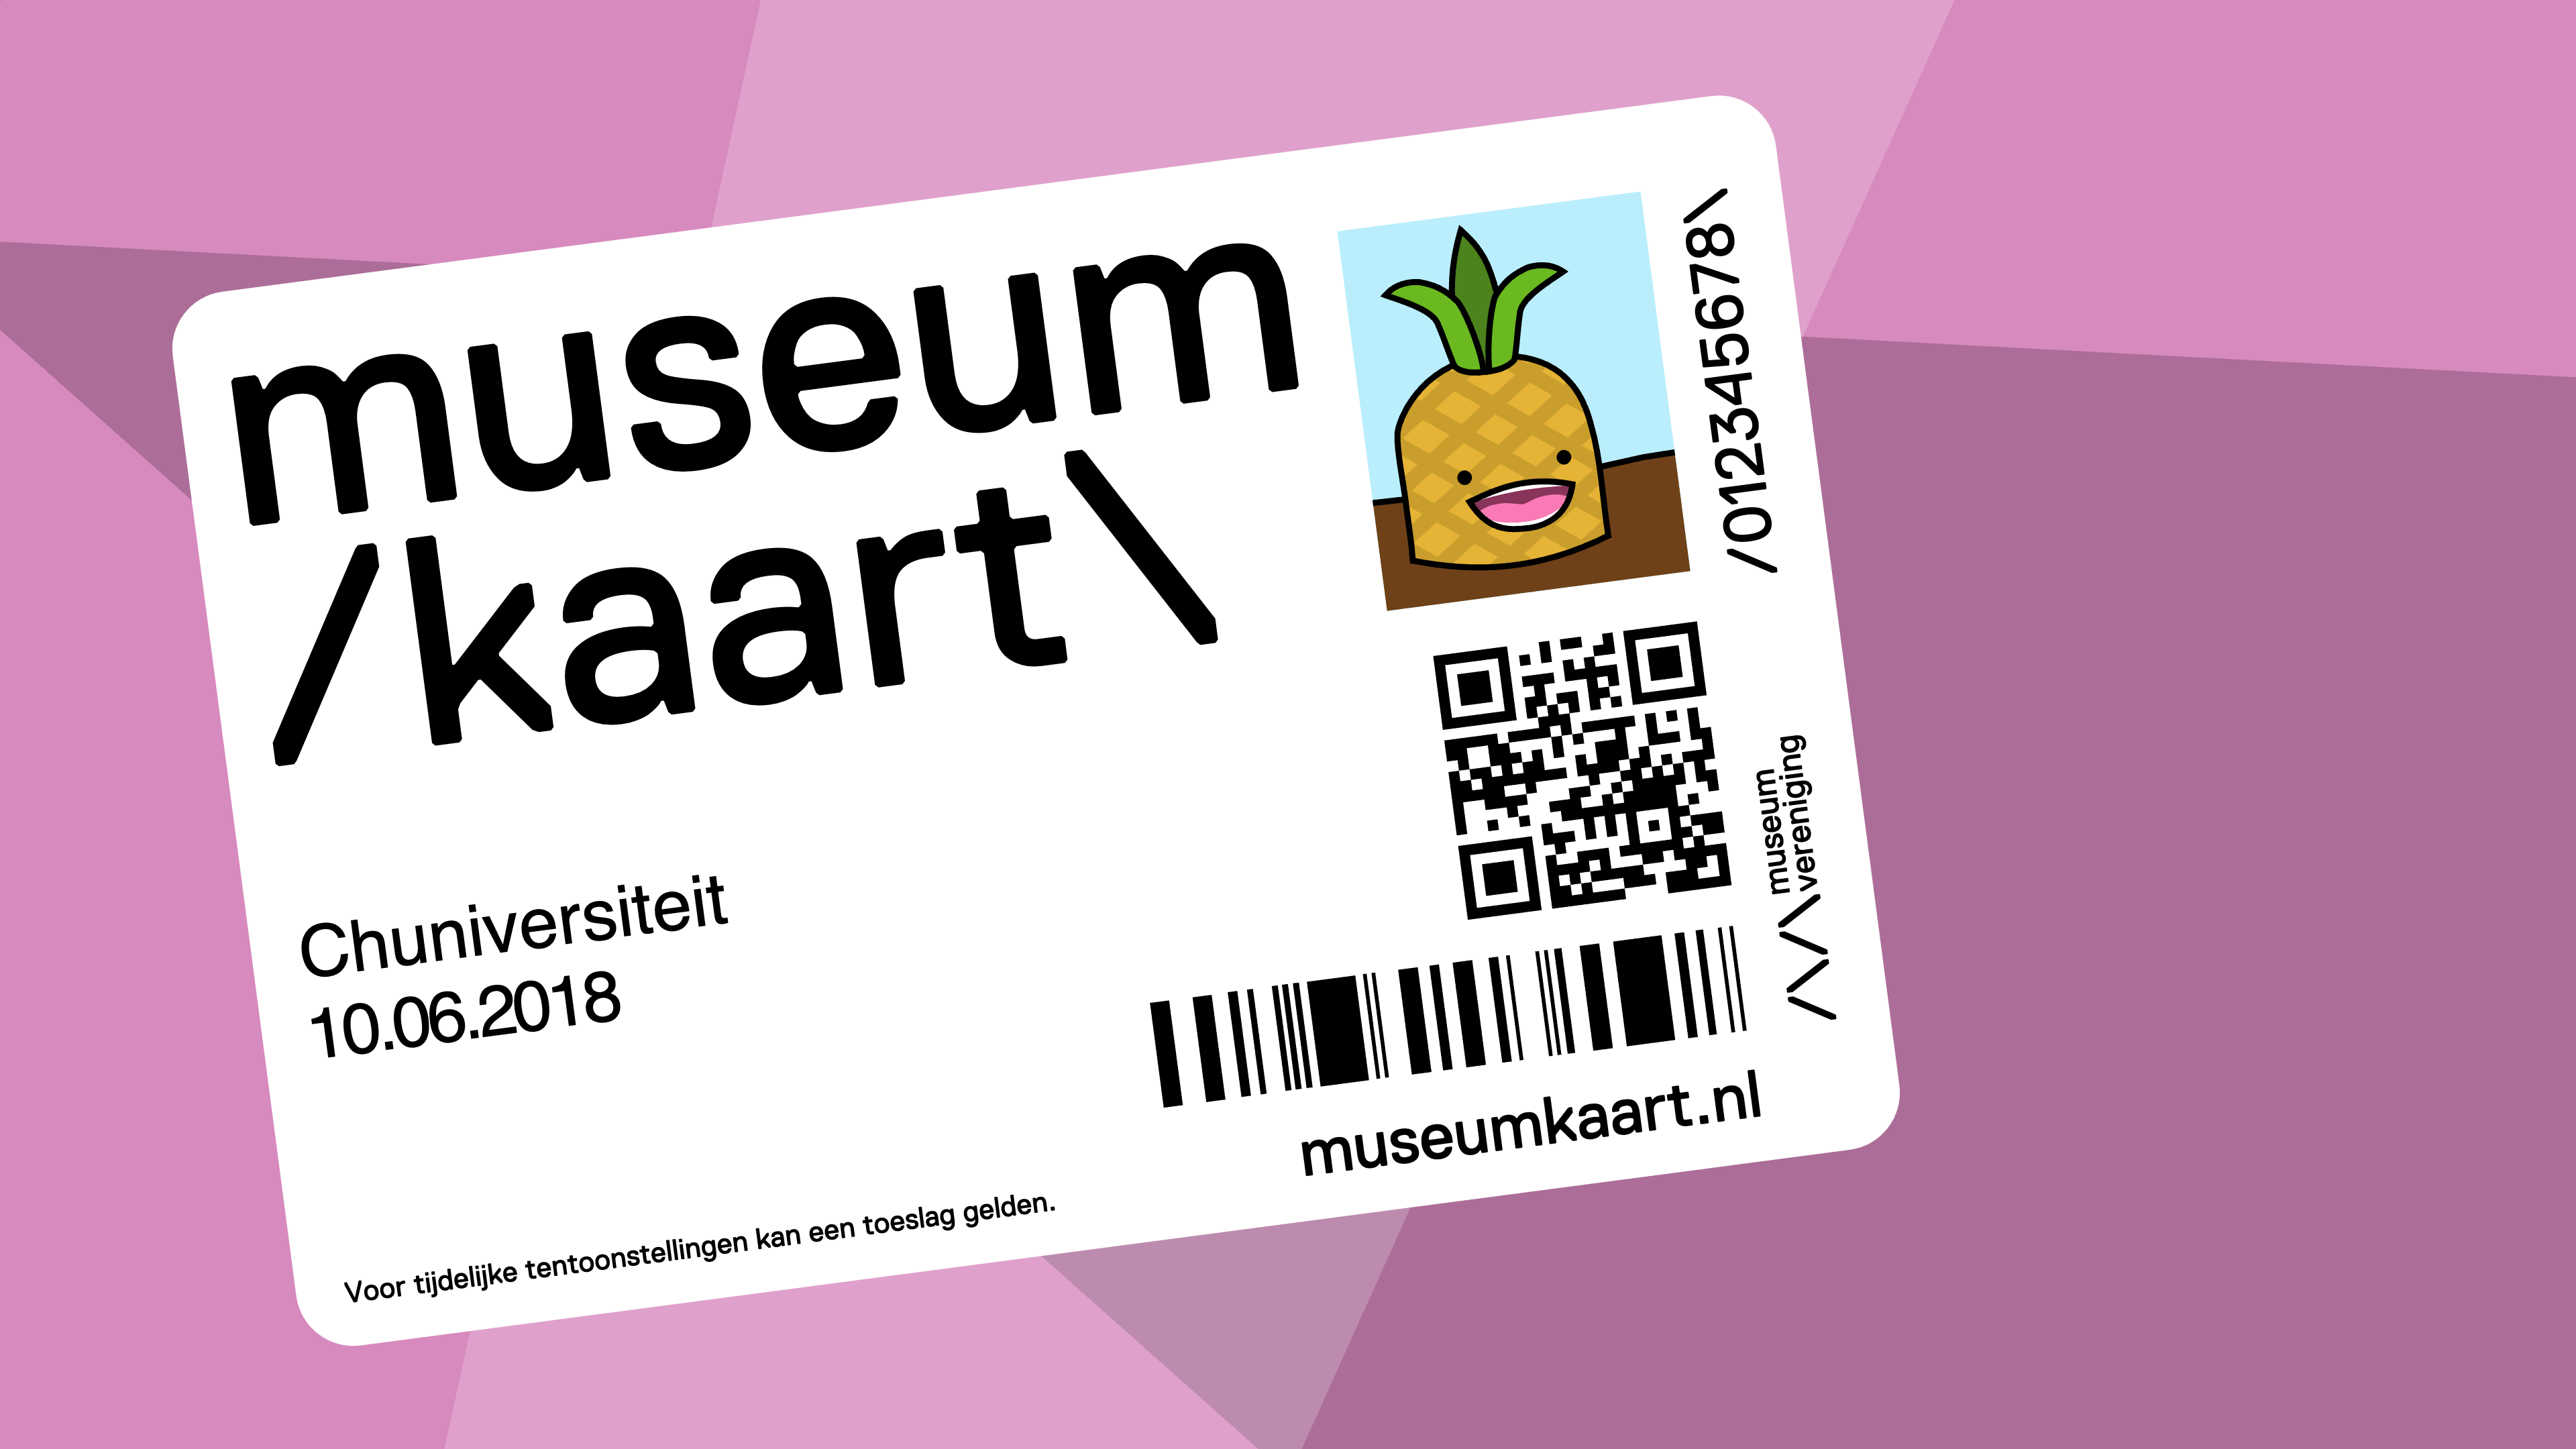 A fictional Netherlands Museum Pass